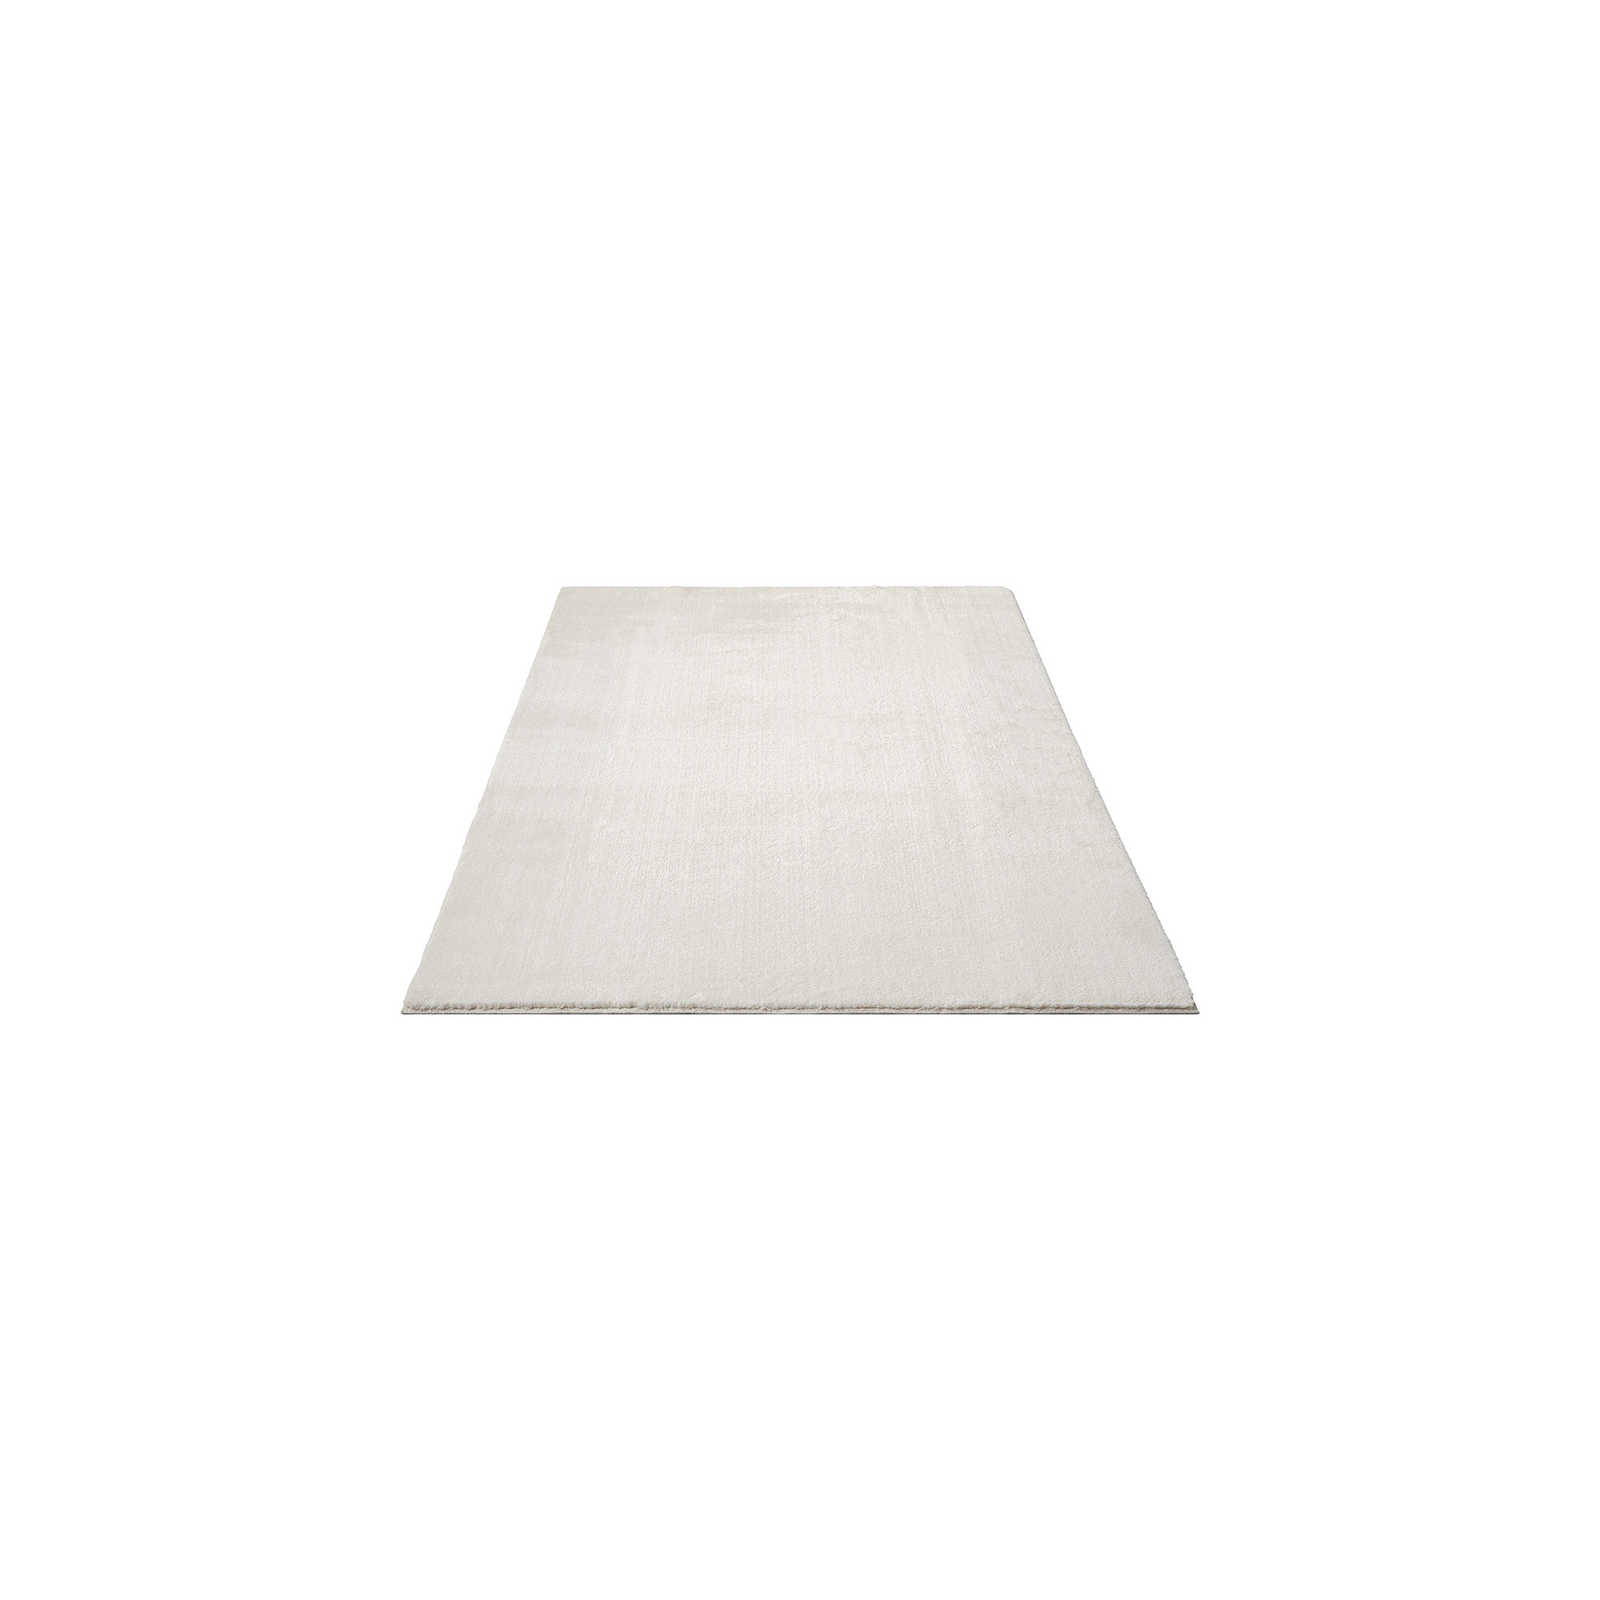 Modischer Hochflor Teppich in Creme – 170 x 120 cm
